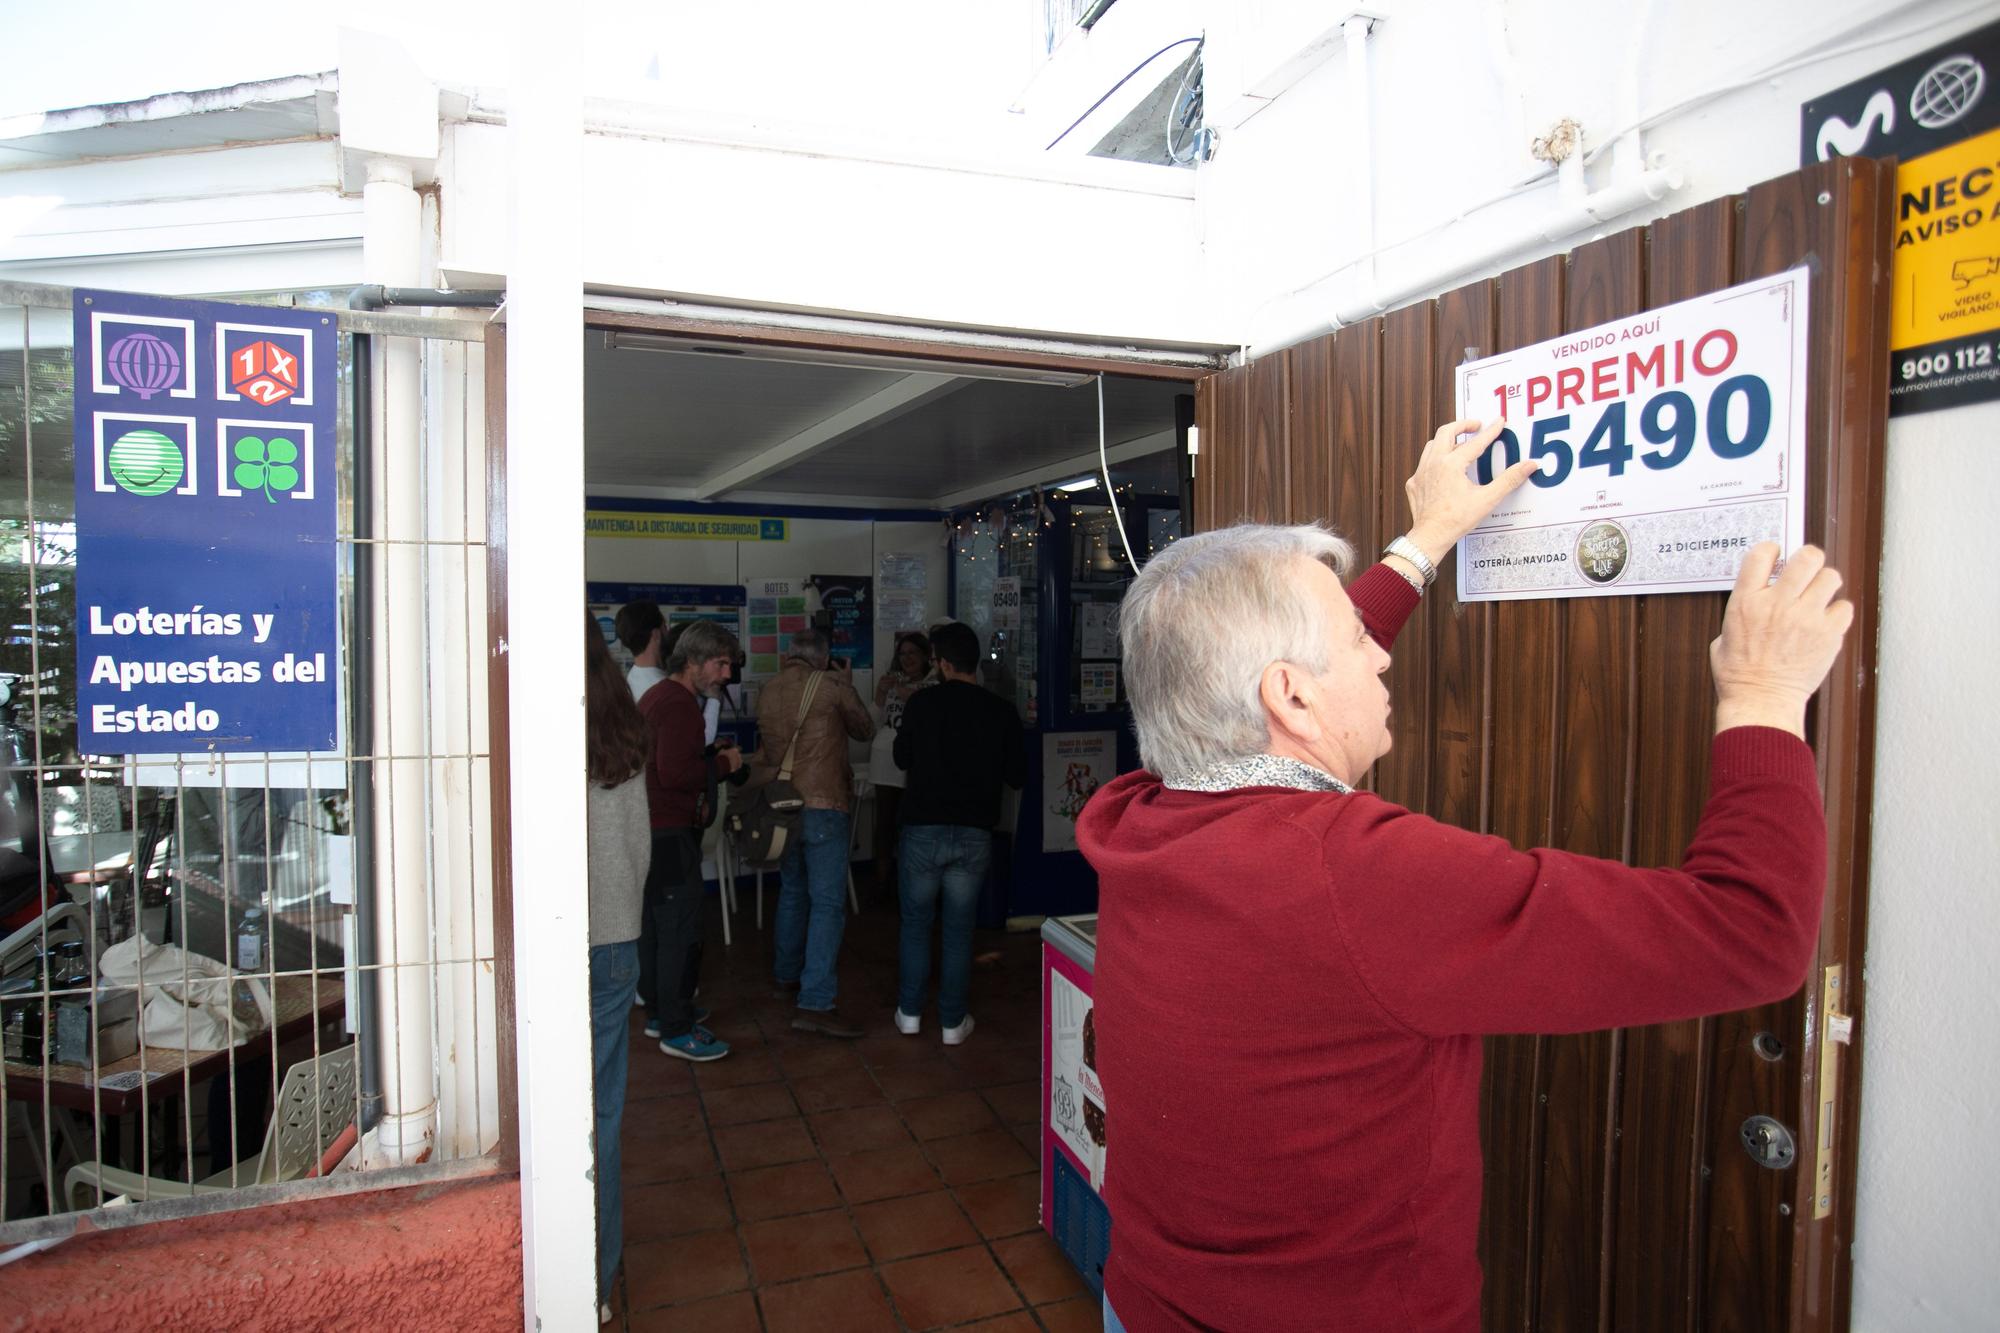 Alegría en el bar Can Bellotera de Ibiza por la venta de un décimo del Gordo